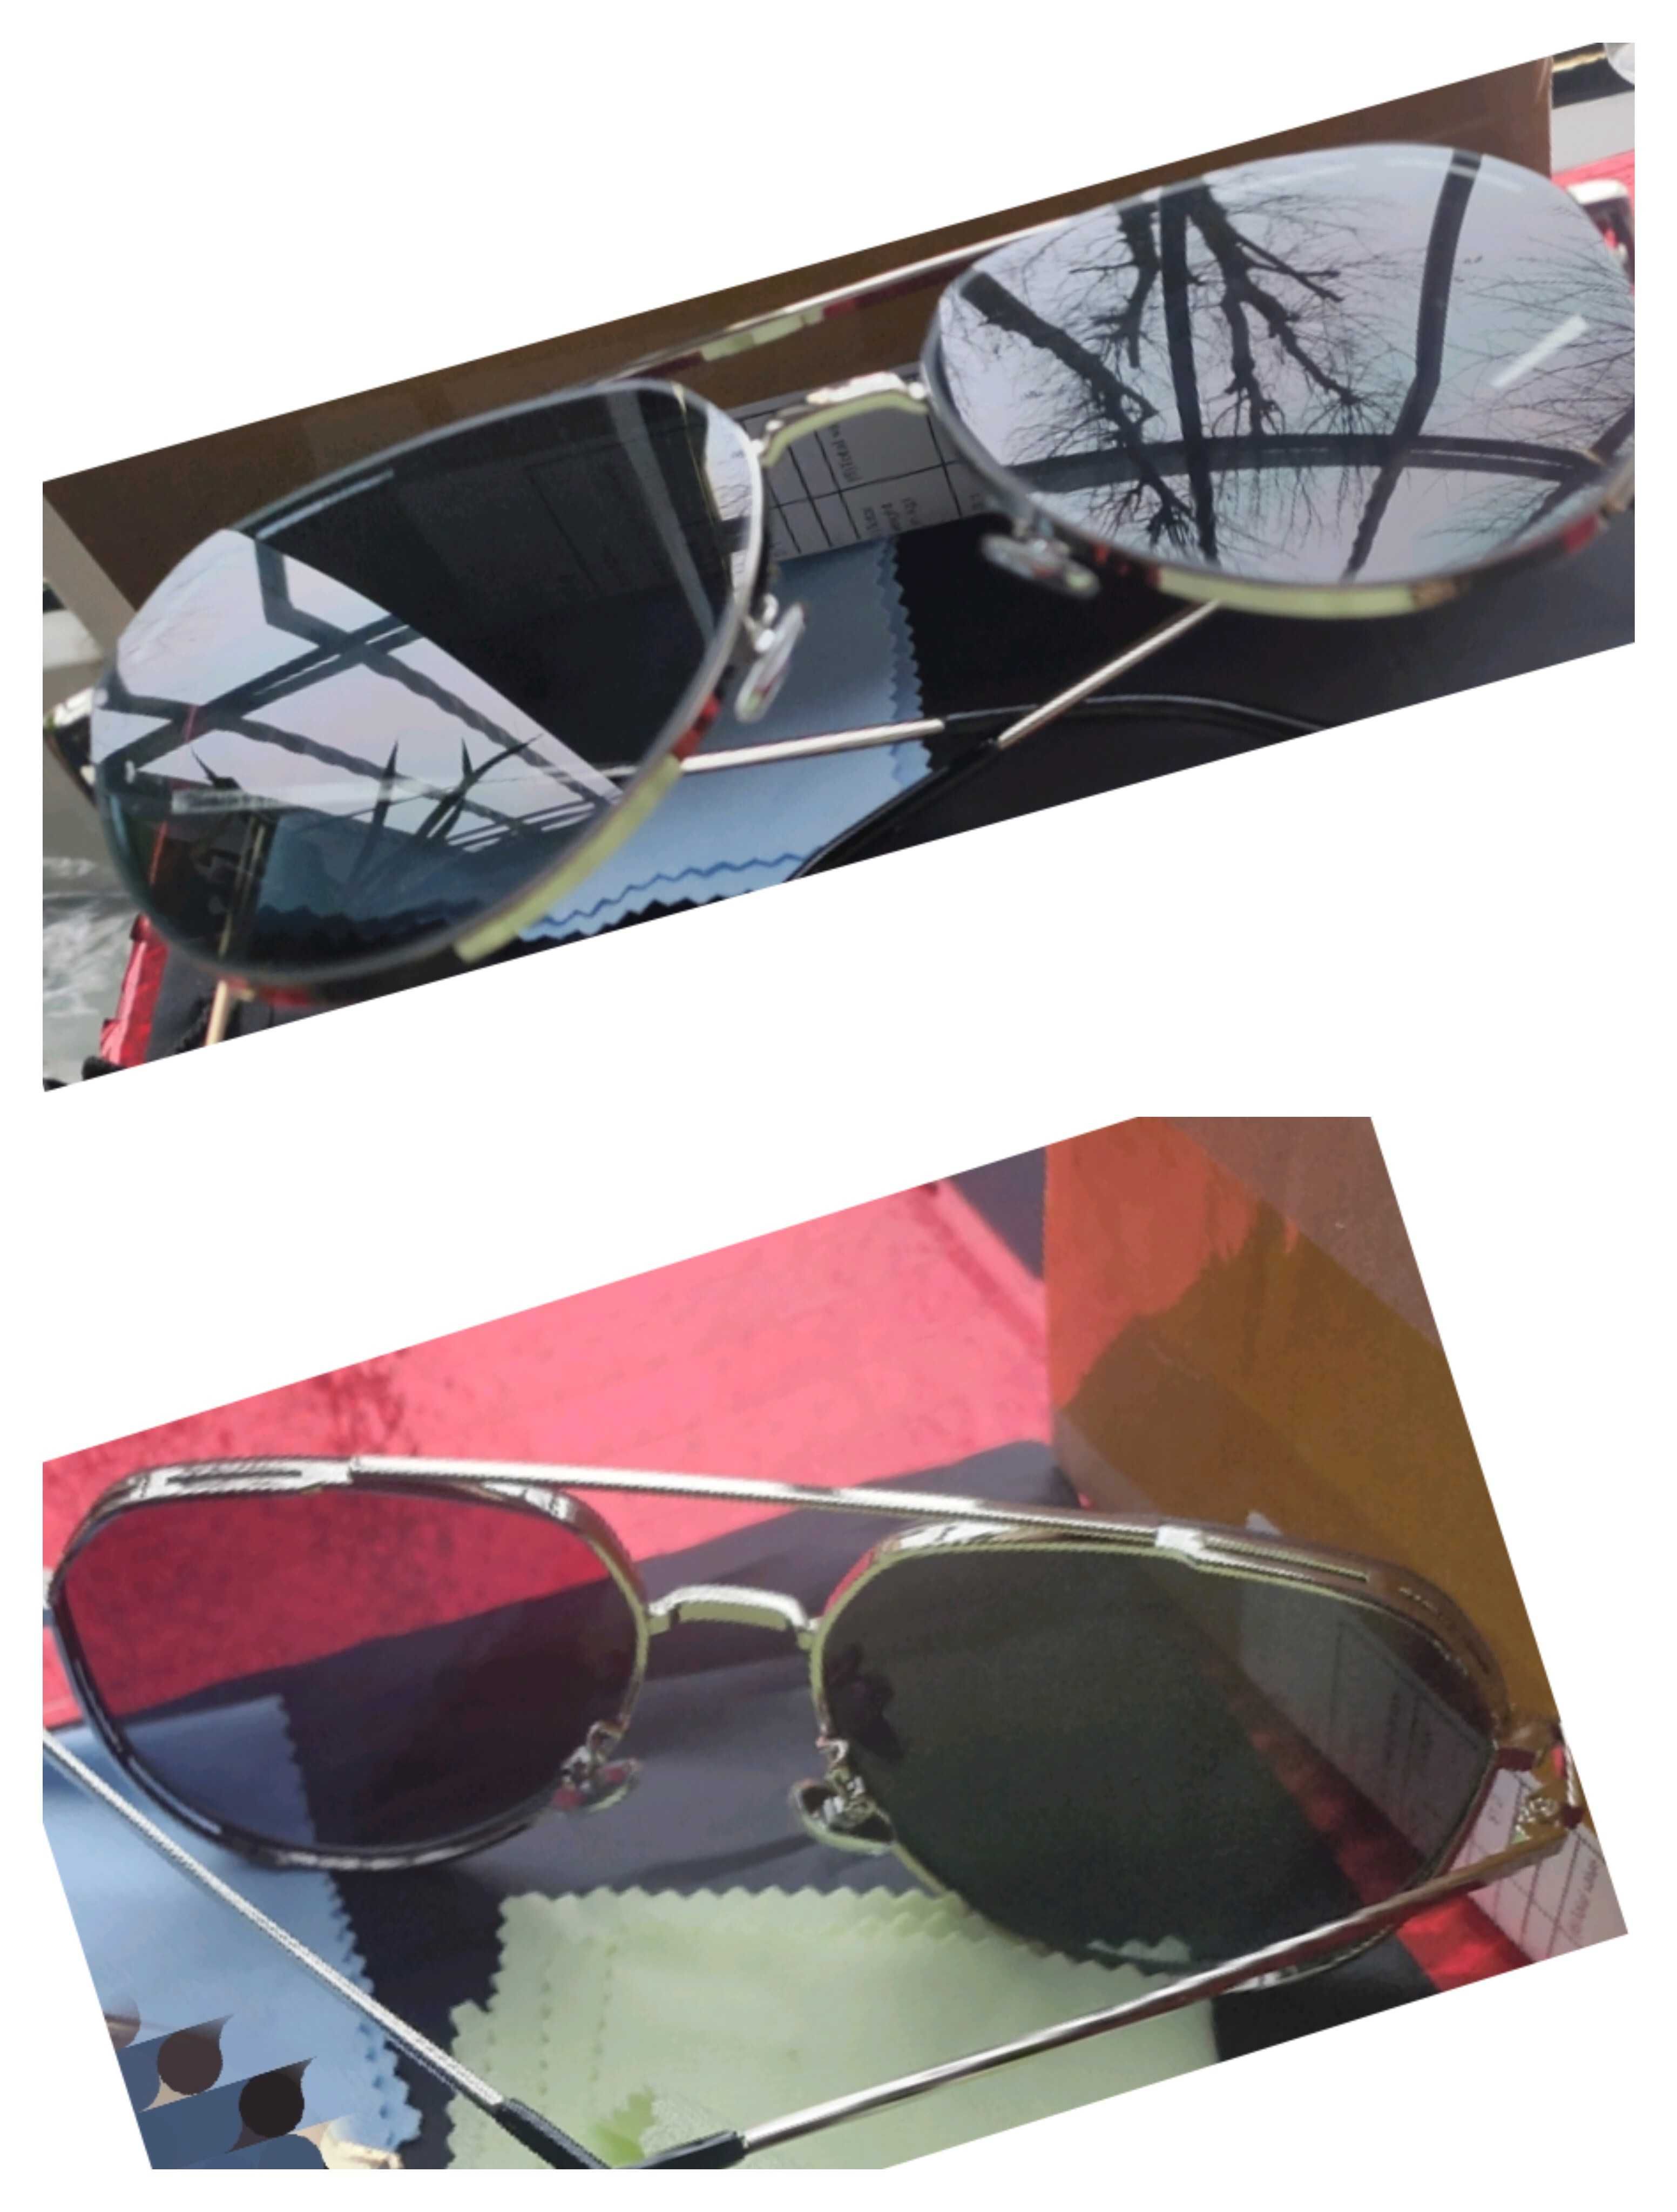 Мужские поляризационные солнцезащитные очки авиаторы. Silver.